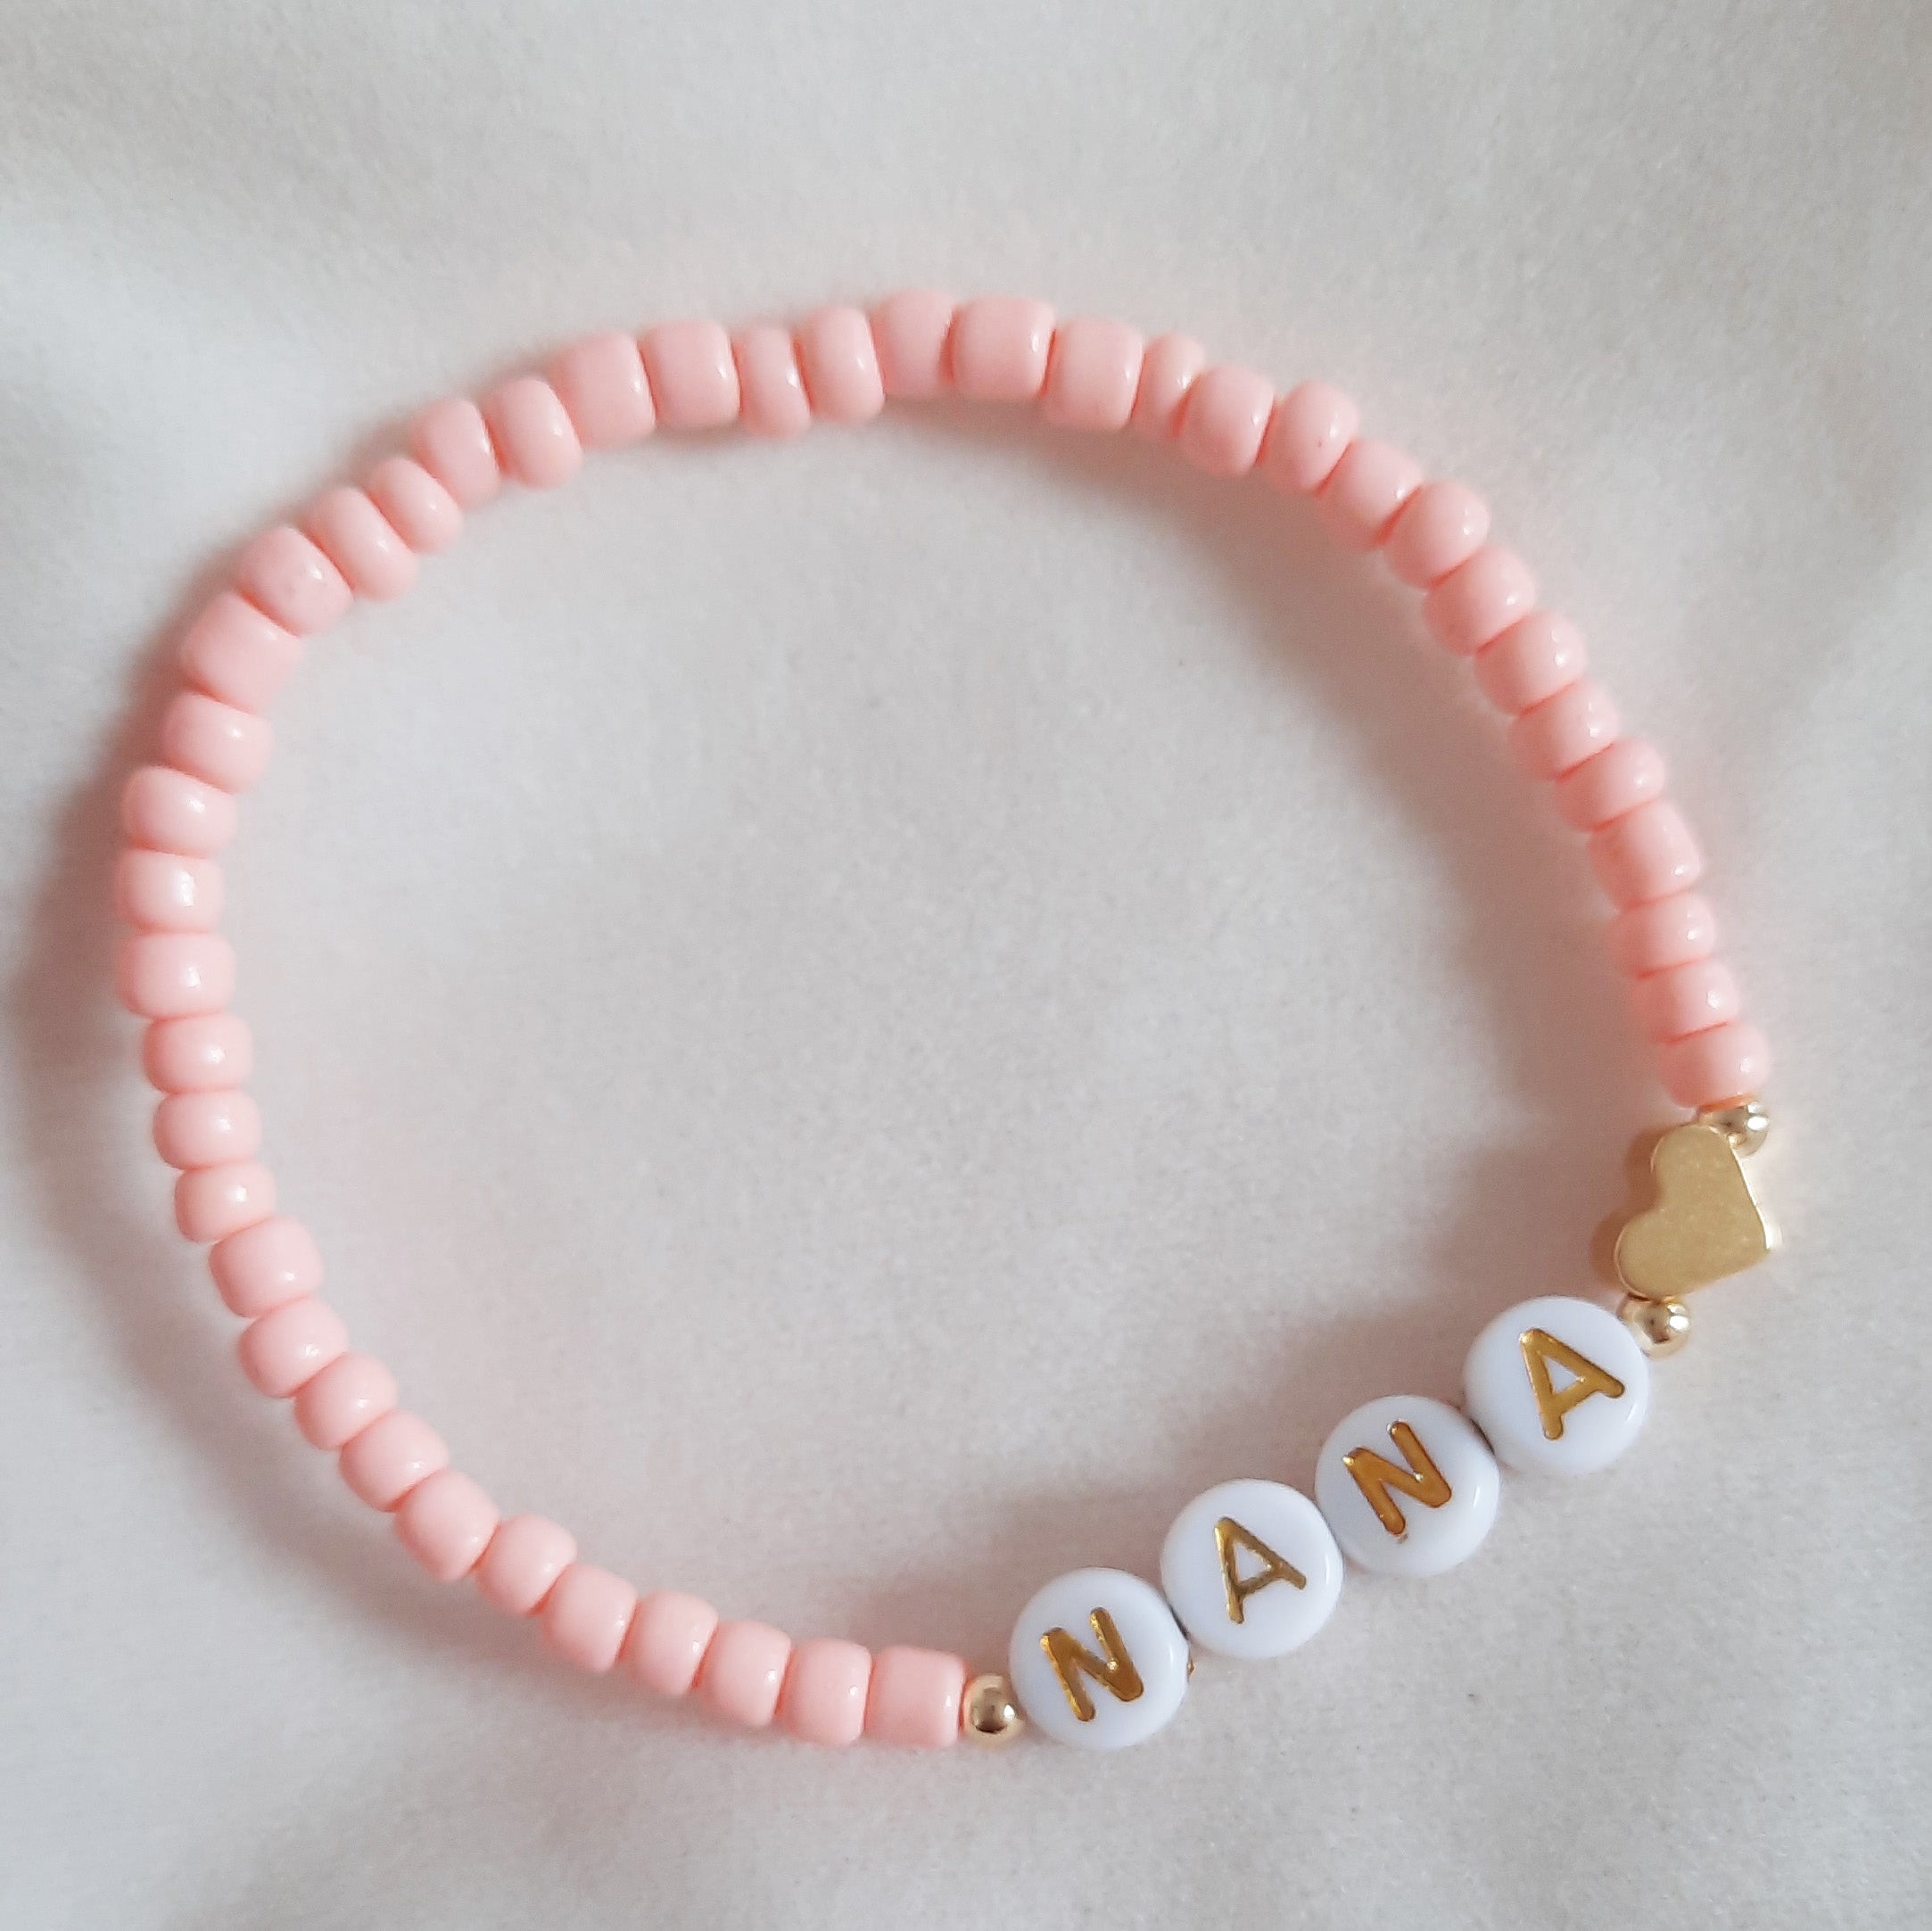 Mam/Mammy/Mama/Mom/Nana bracelet - peach